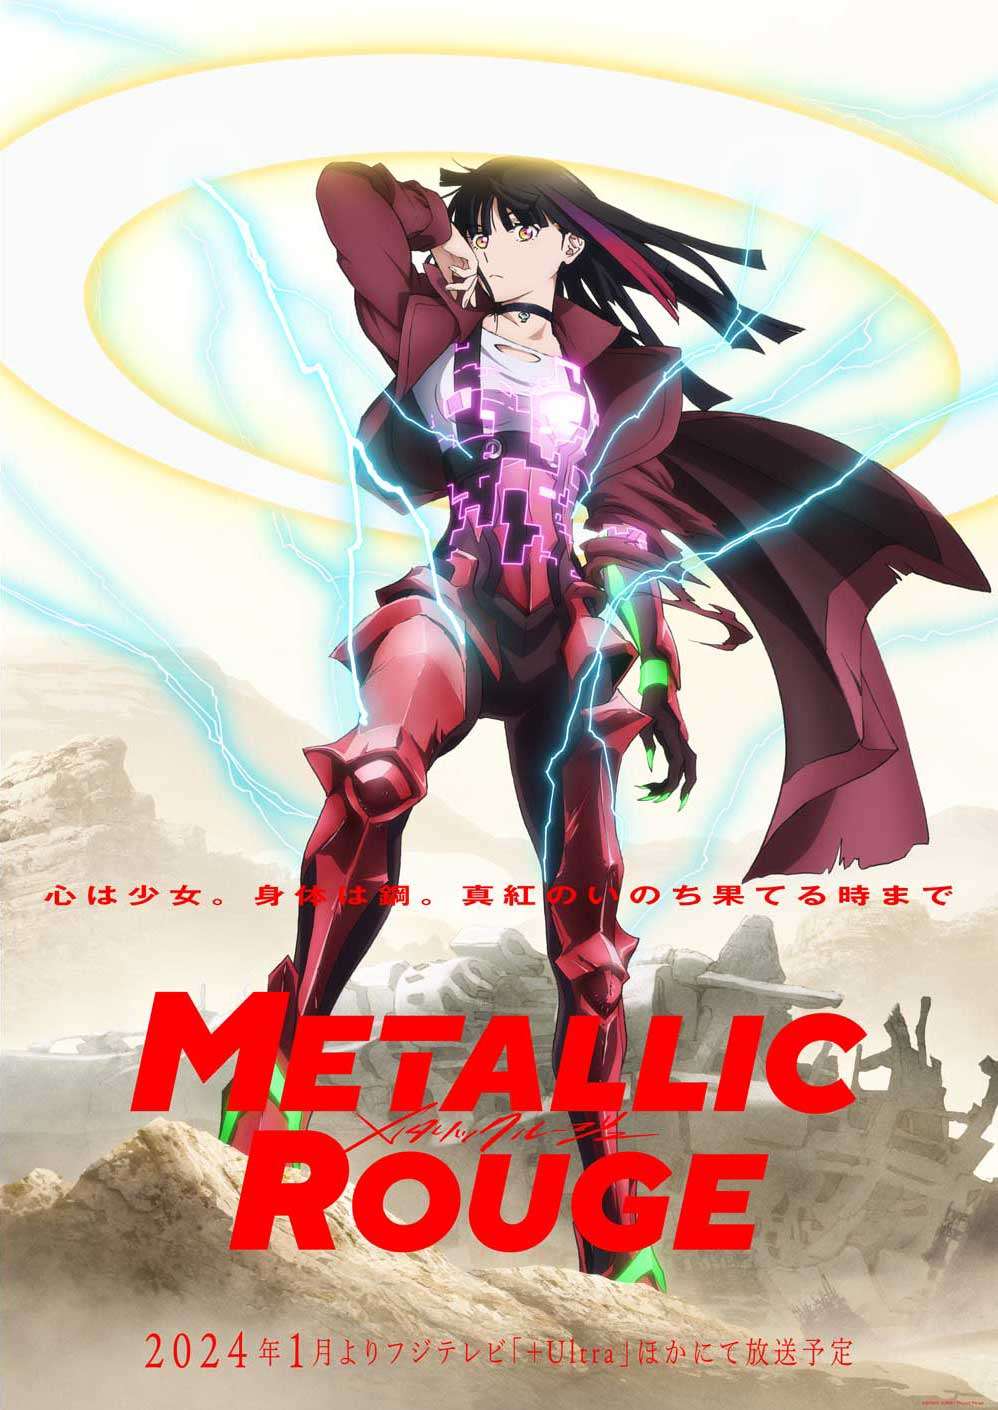 Metallic Rouge, bom tấn anime tiếp theo của Studio Bones hé lộ thêm nhiều hình ảnh mới